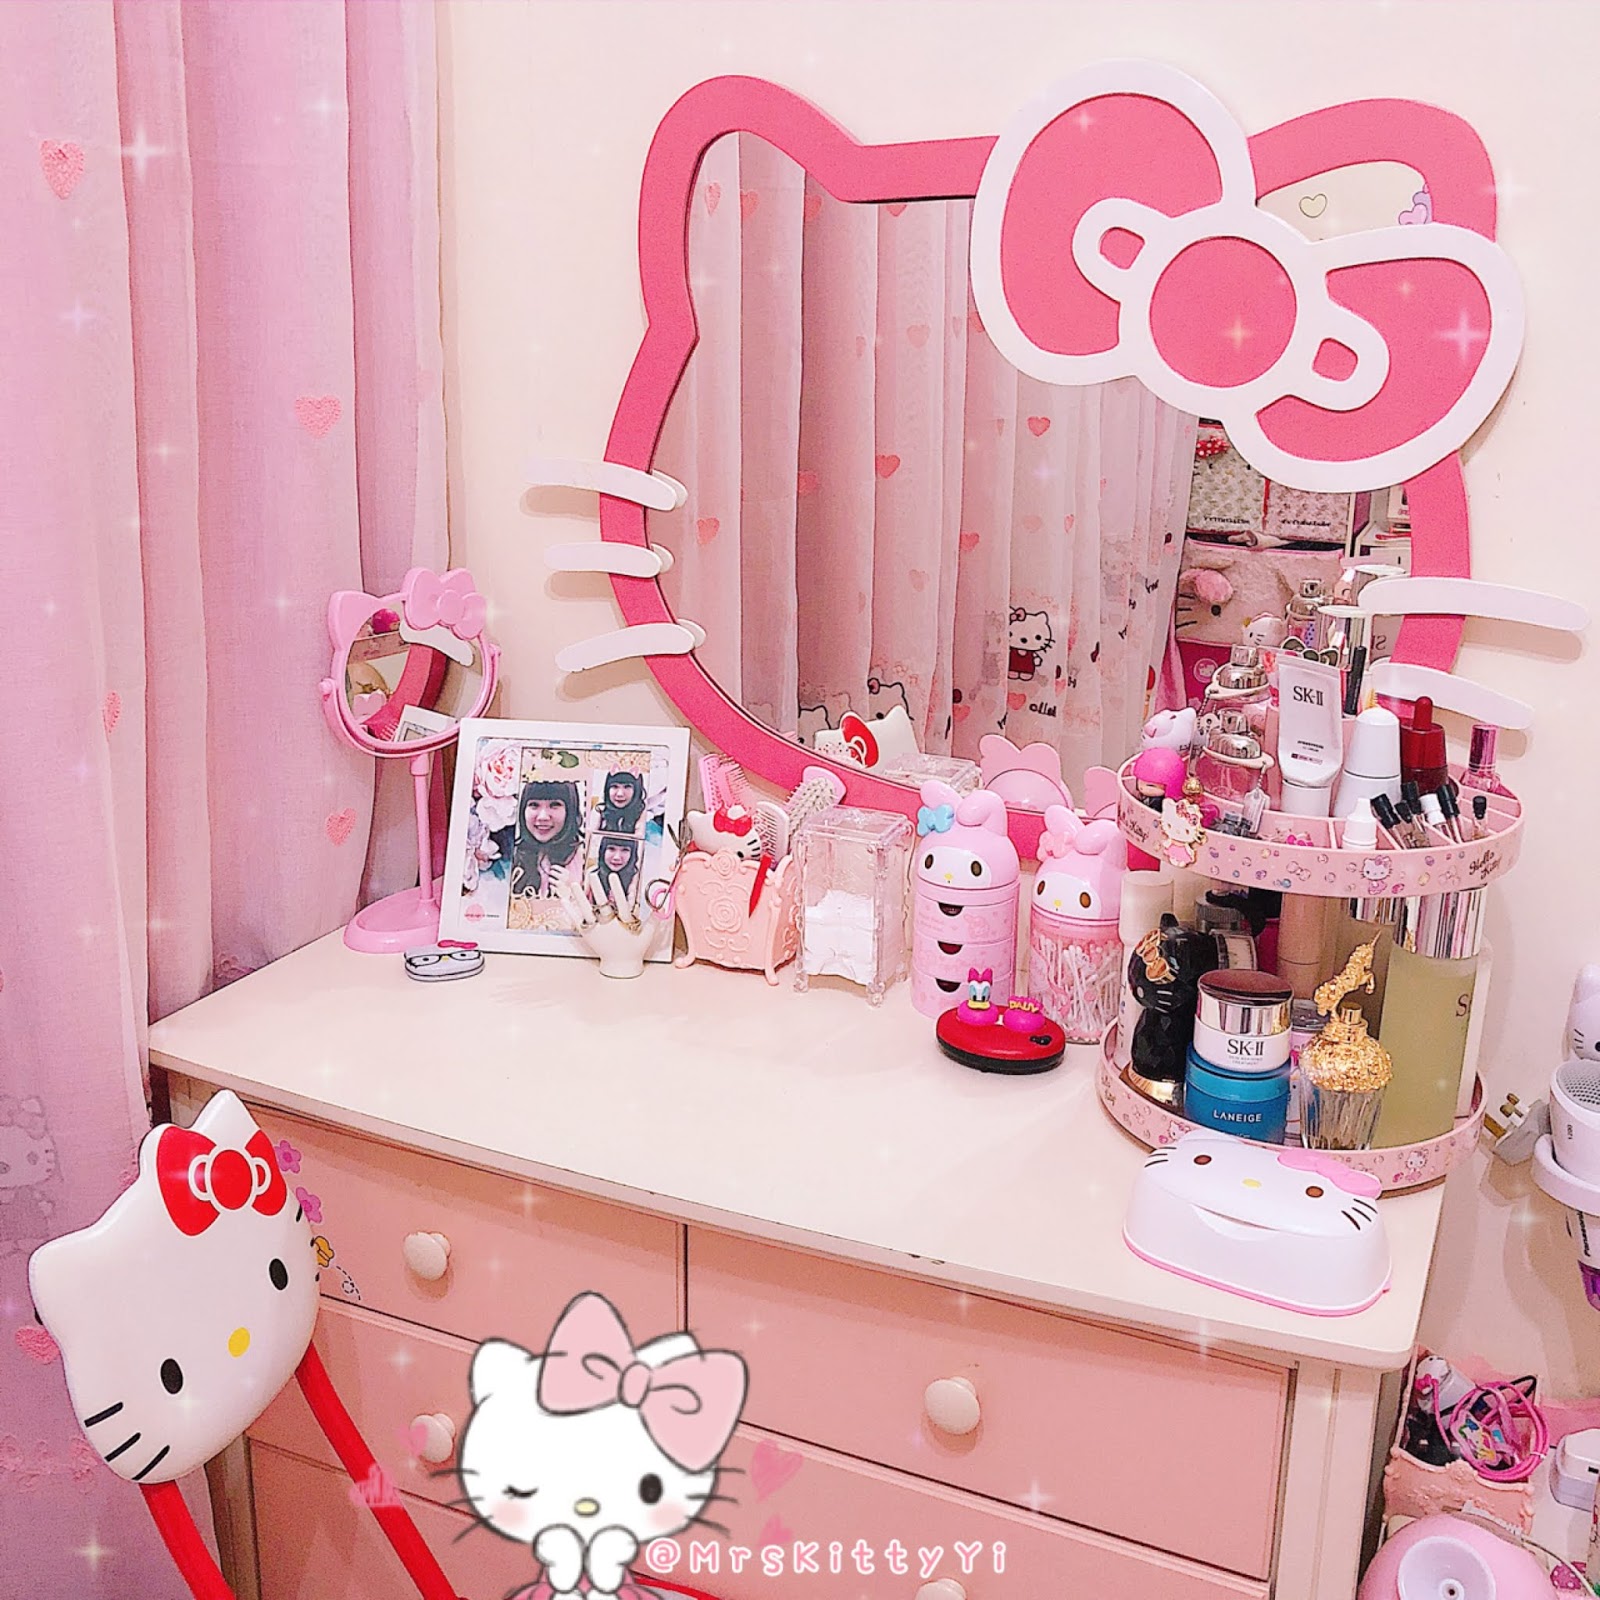 Mrskitty Yi Last Year Hello Kitty Stuff Part 1